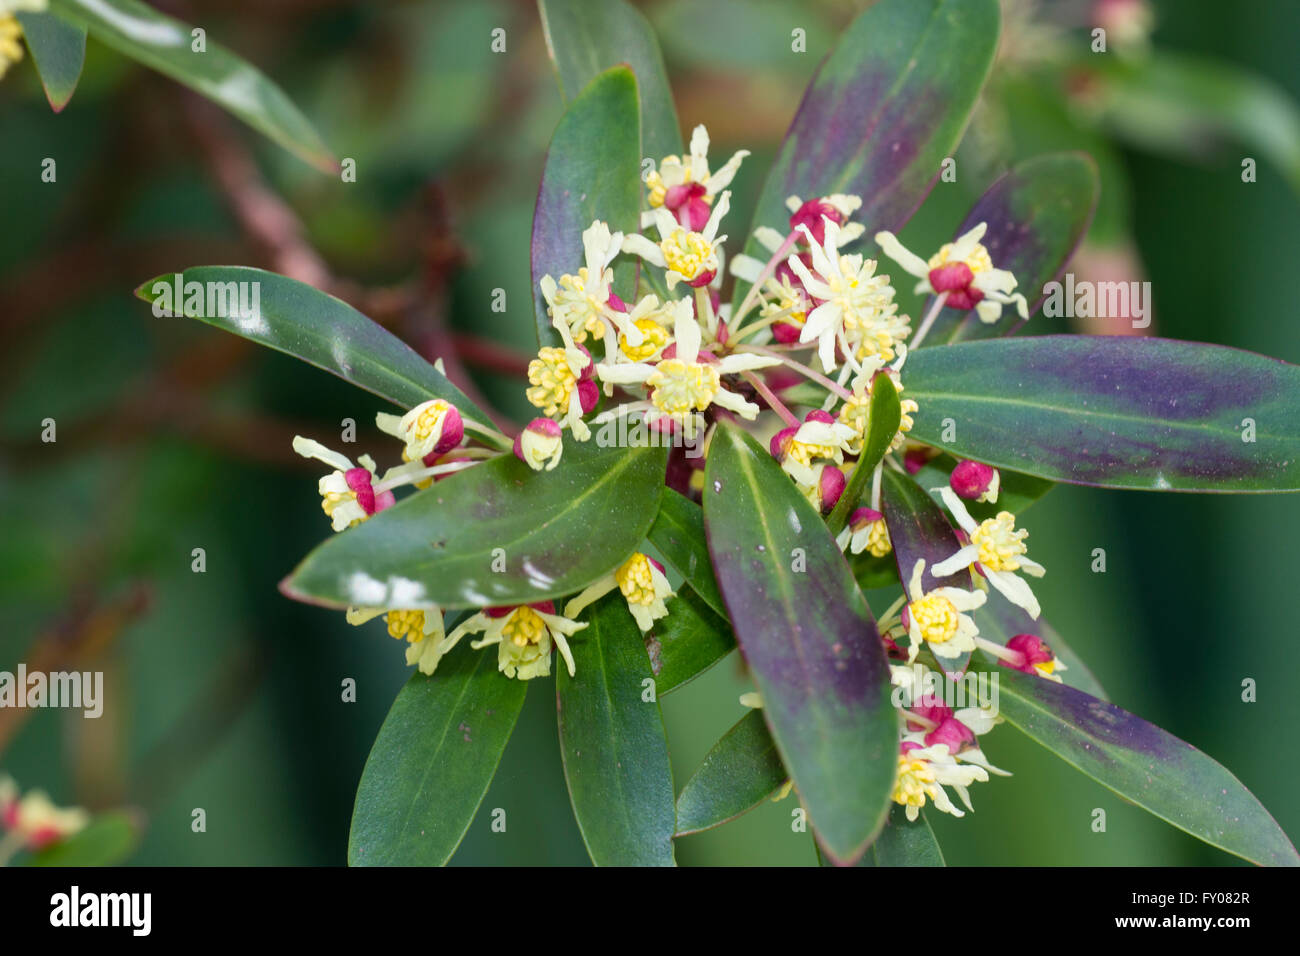 Spring flowers of the Australian mountain pepper bush, Tasmannia (Drimys) lanceolata Stock Photo